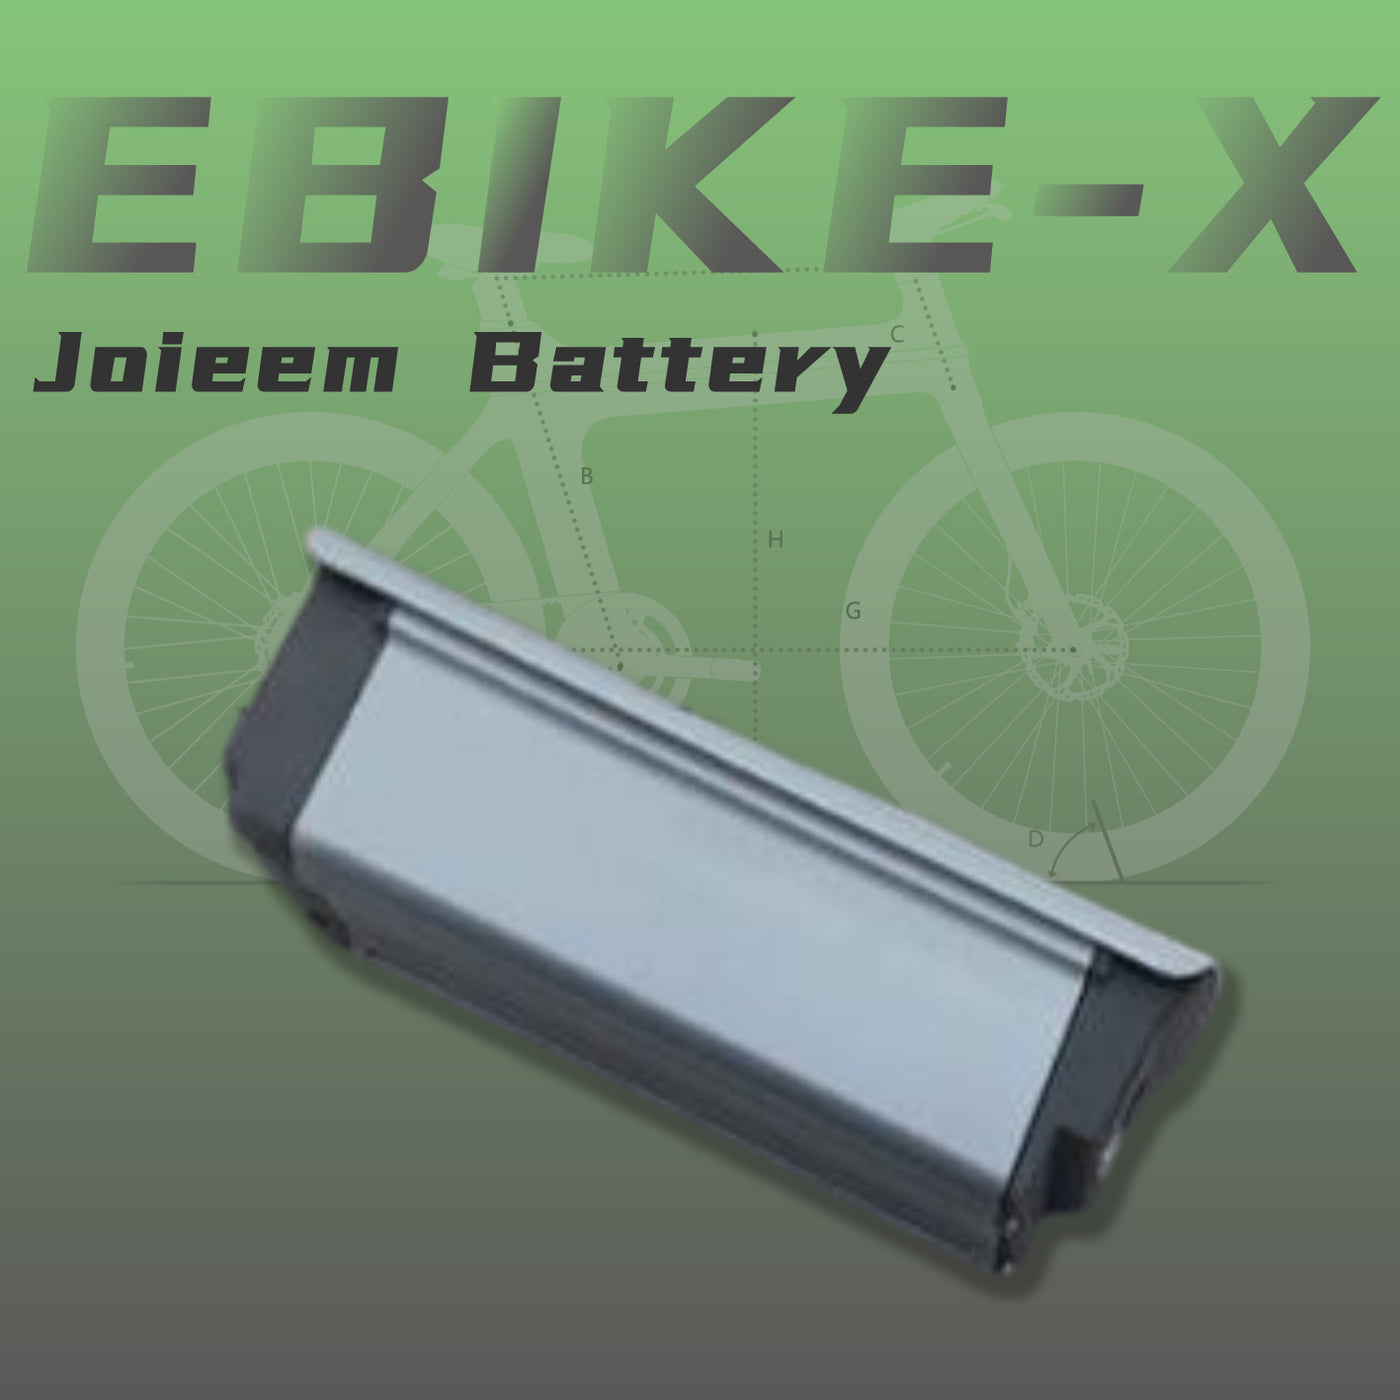 Ebike-X Battery